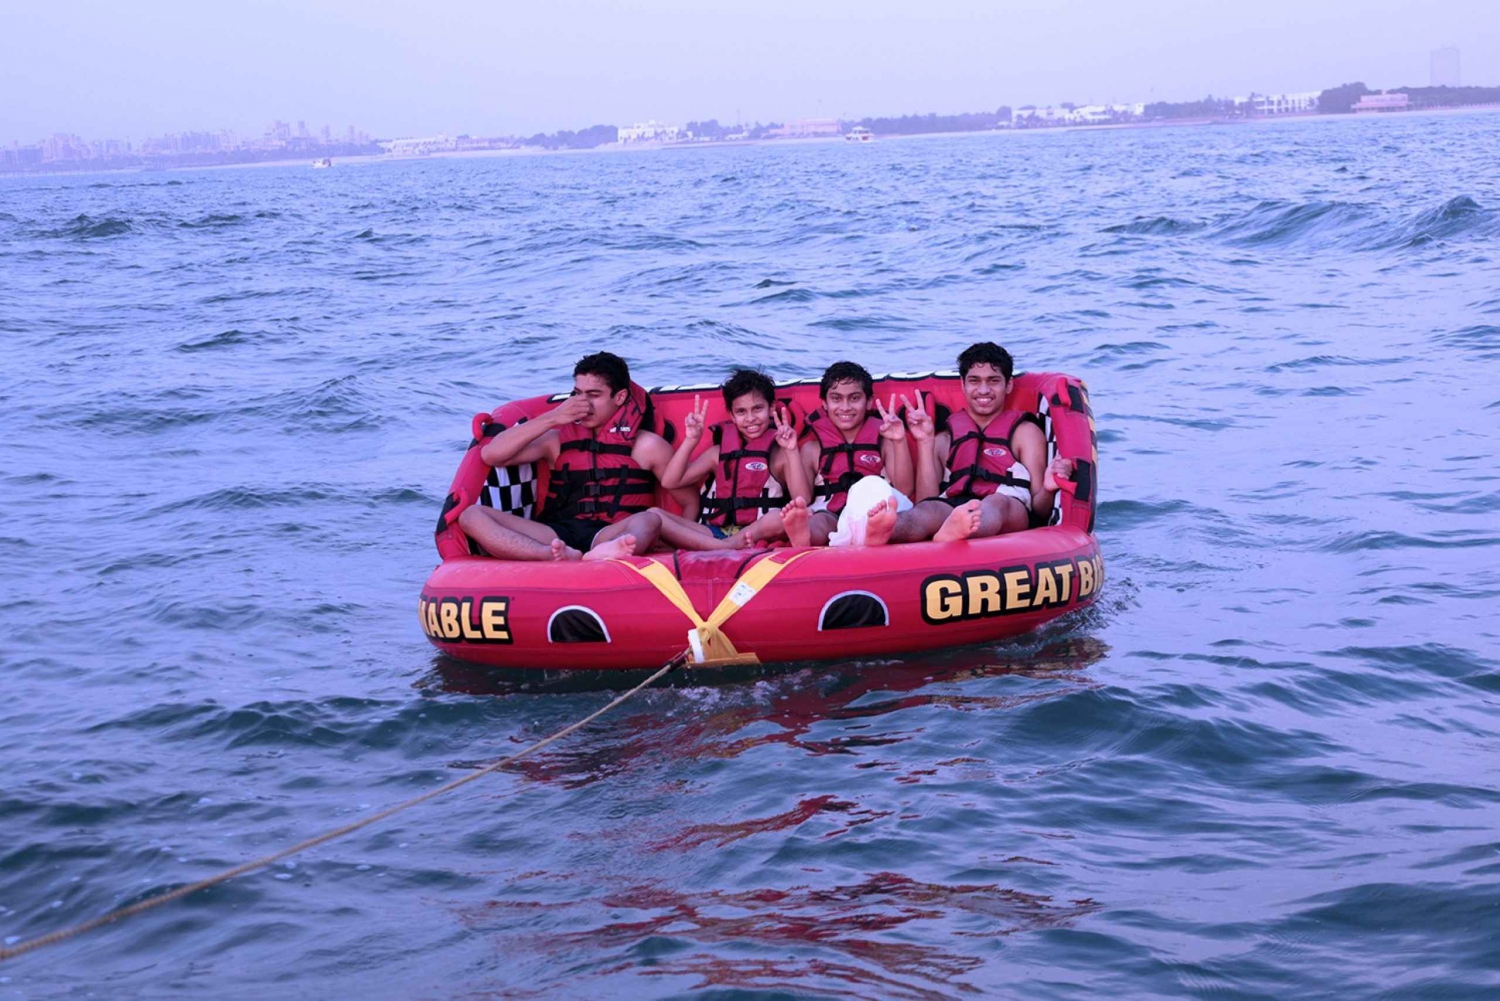 Dubai: Ryhmälle yksinoikeudella 15 minuuttia Donut Boat Ride -veneajelua.